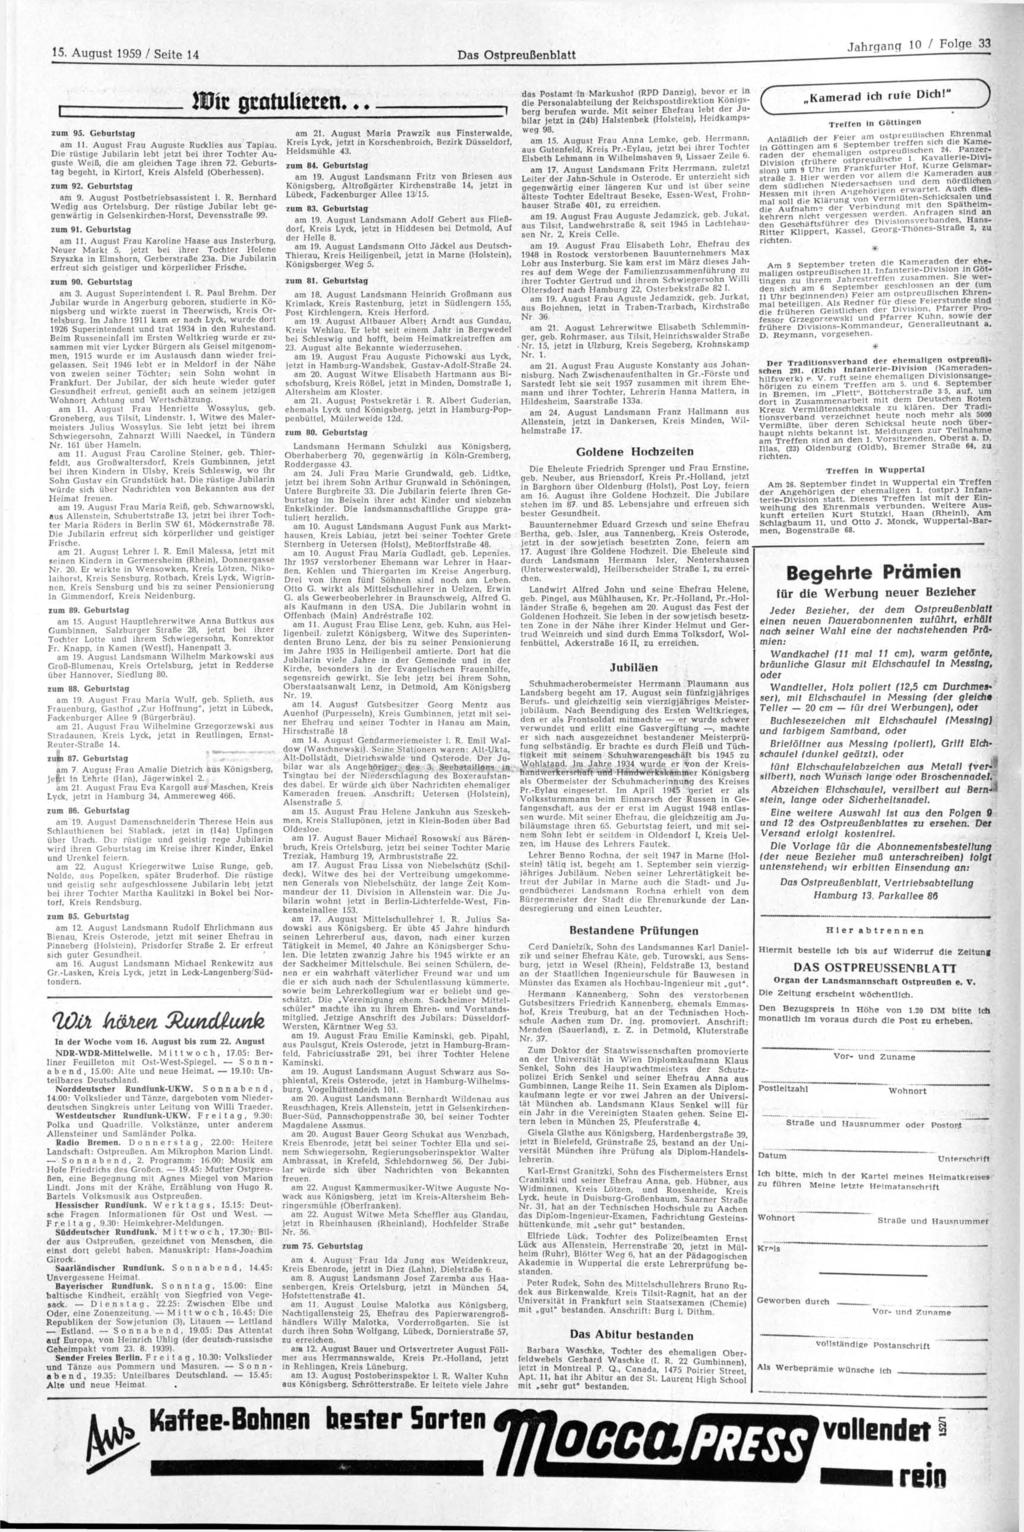 15. August 1959 / Seite 14 Das Ostpreußenblatt Wii zum 95. Geburtstag am 11. August Frau Auguste Rucklies aus Tapiau.